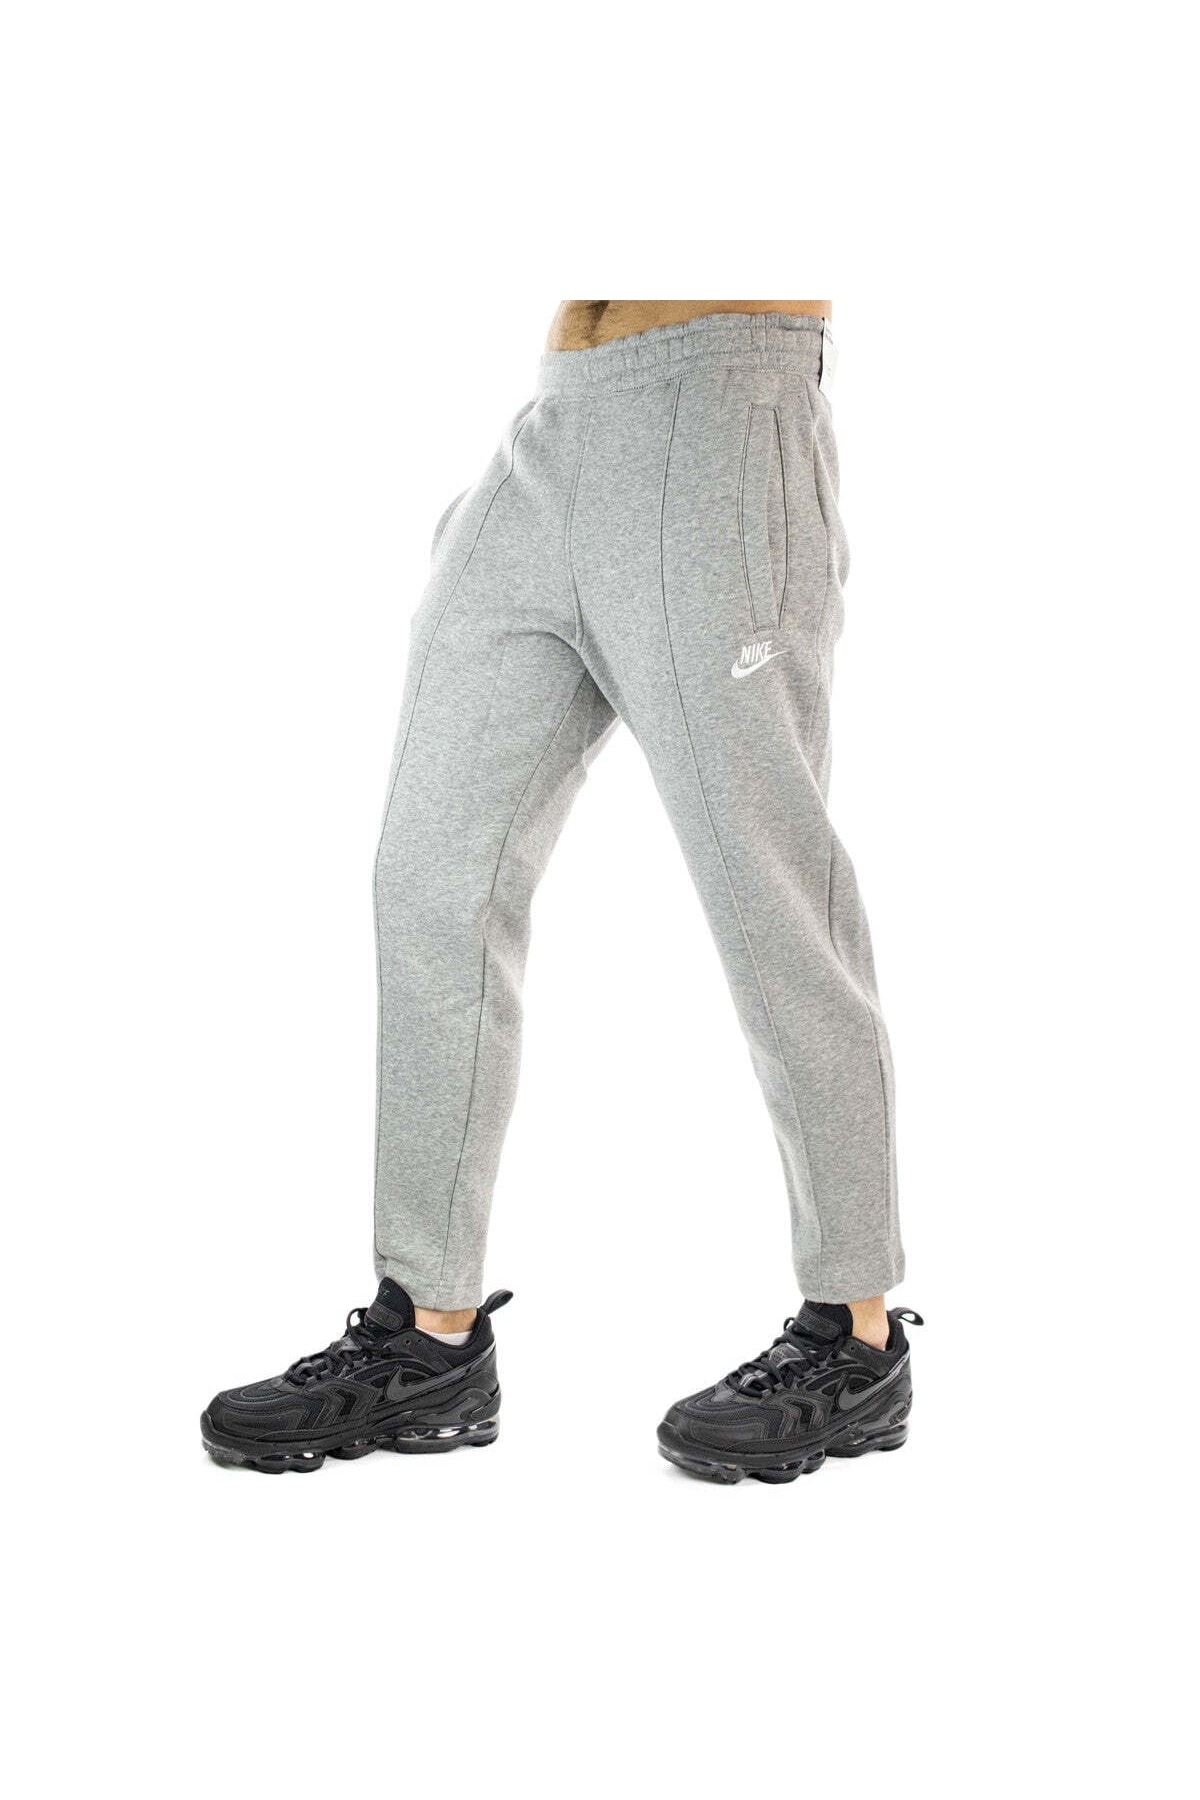 Nike Sportswear Men's Trousers Erkek Eşofman Altı